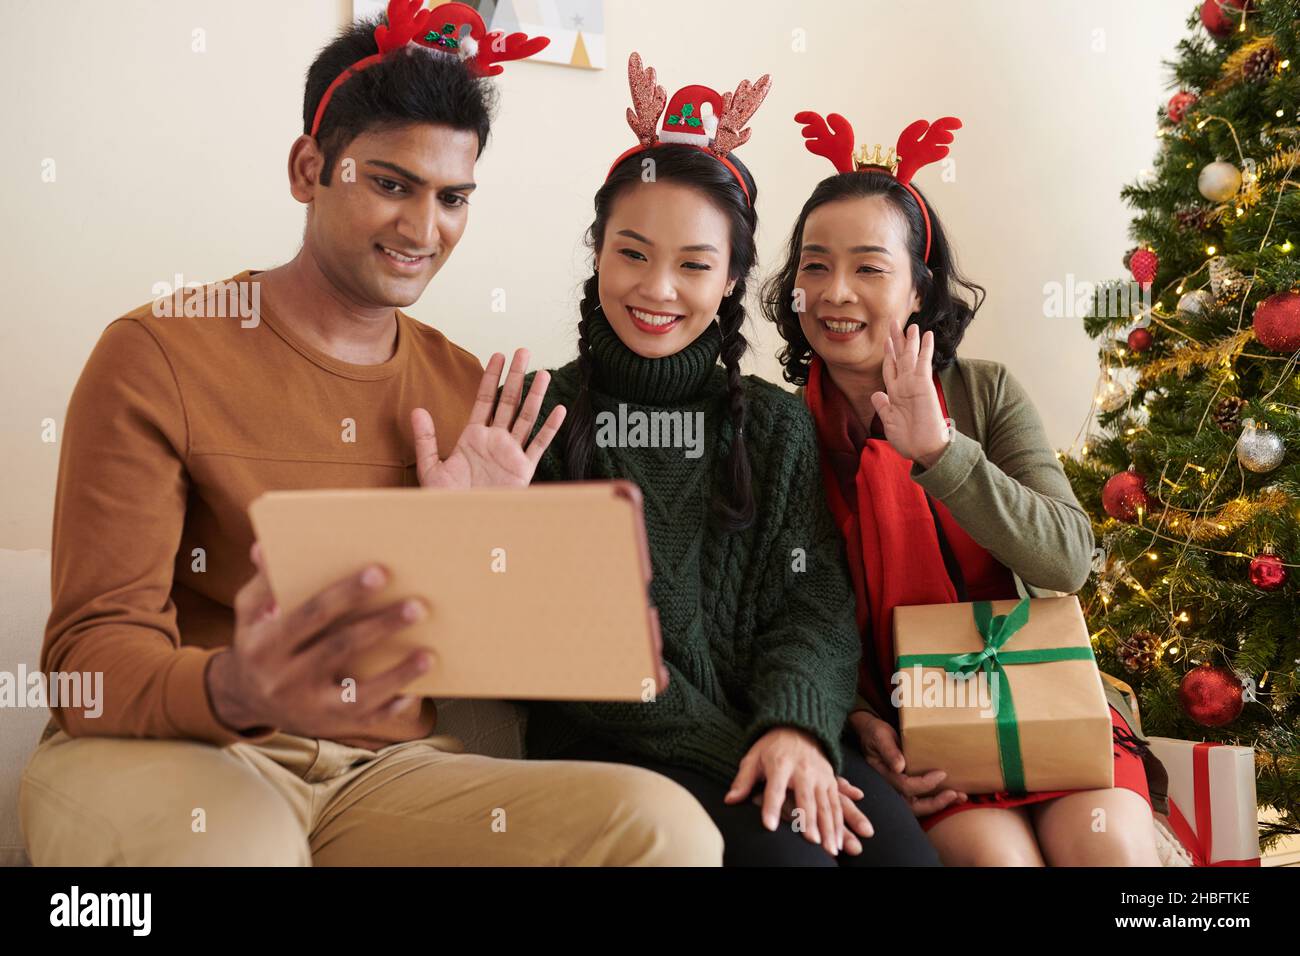 Lächelnde Familienmitglieder winken mit den Händen, als sie Verwandte aus einer anderen Stadt per Video anriefen, um frohe Weihnachten zu wünschen Stockfoto